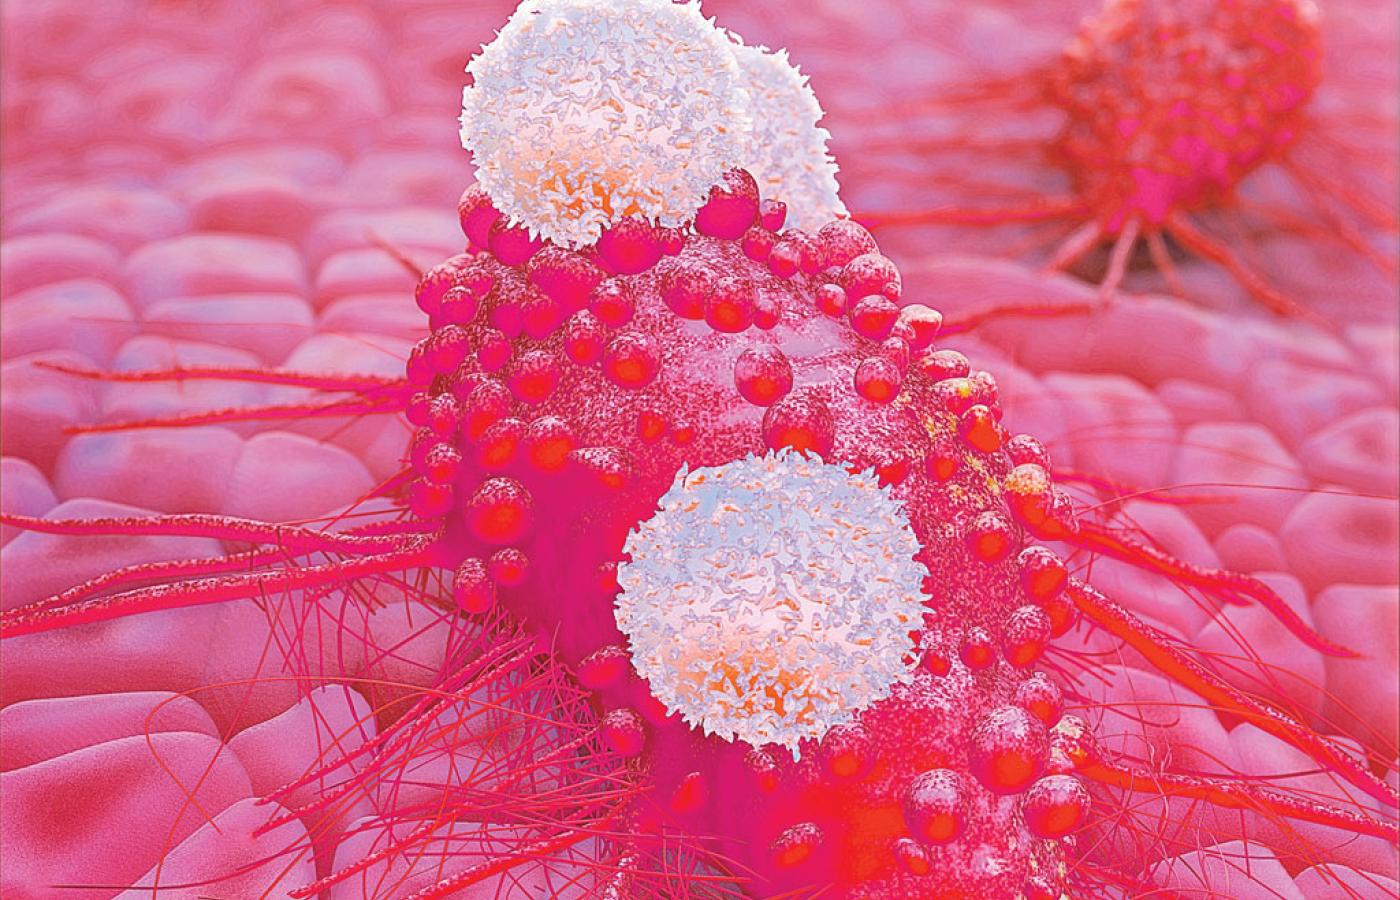 Limfocyty (zaznaczone na biało) przywierają do komórki raka, rozpoznając obecne na jej powierzchni białka.